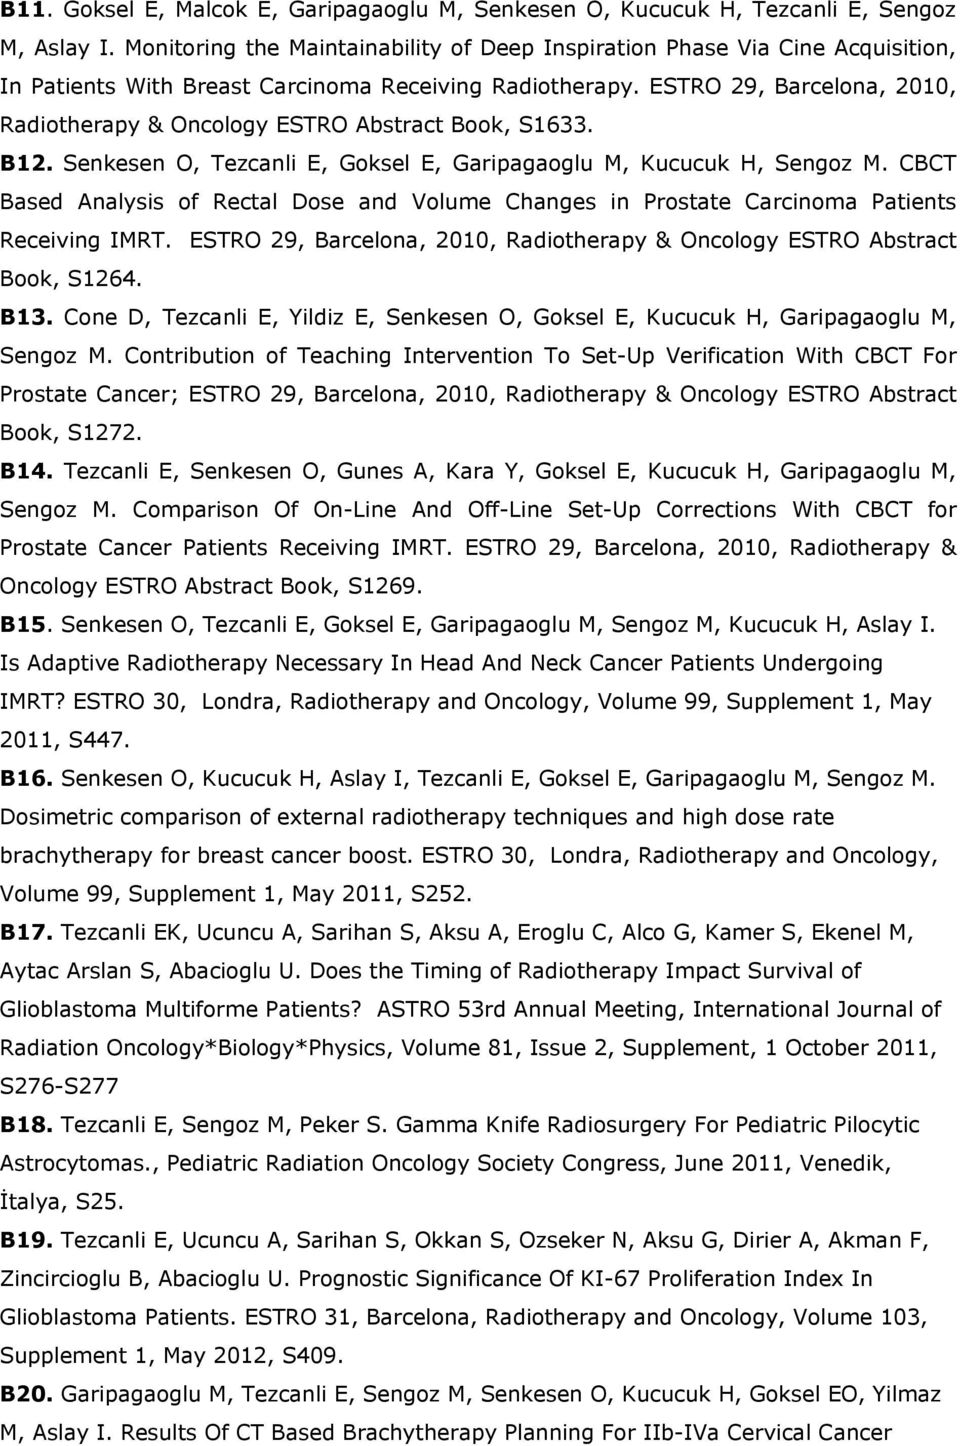 ESTRO 29, Barcelona, 2010, Radiotherapy & Oncology ESTRO Abstract Book, S1633. B12. Senkesen O, Tezcanli E, Goksel E, Garipagaoglu M, Kucucuk H, Sengoz M.